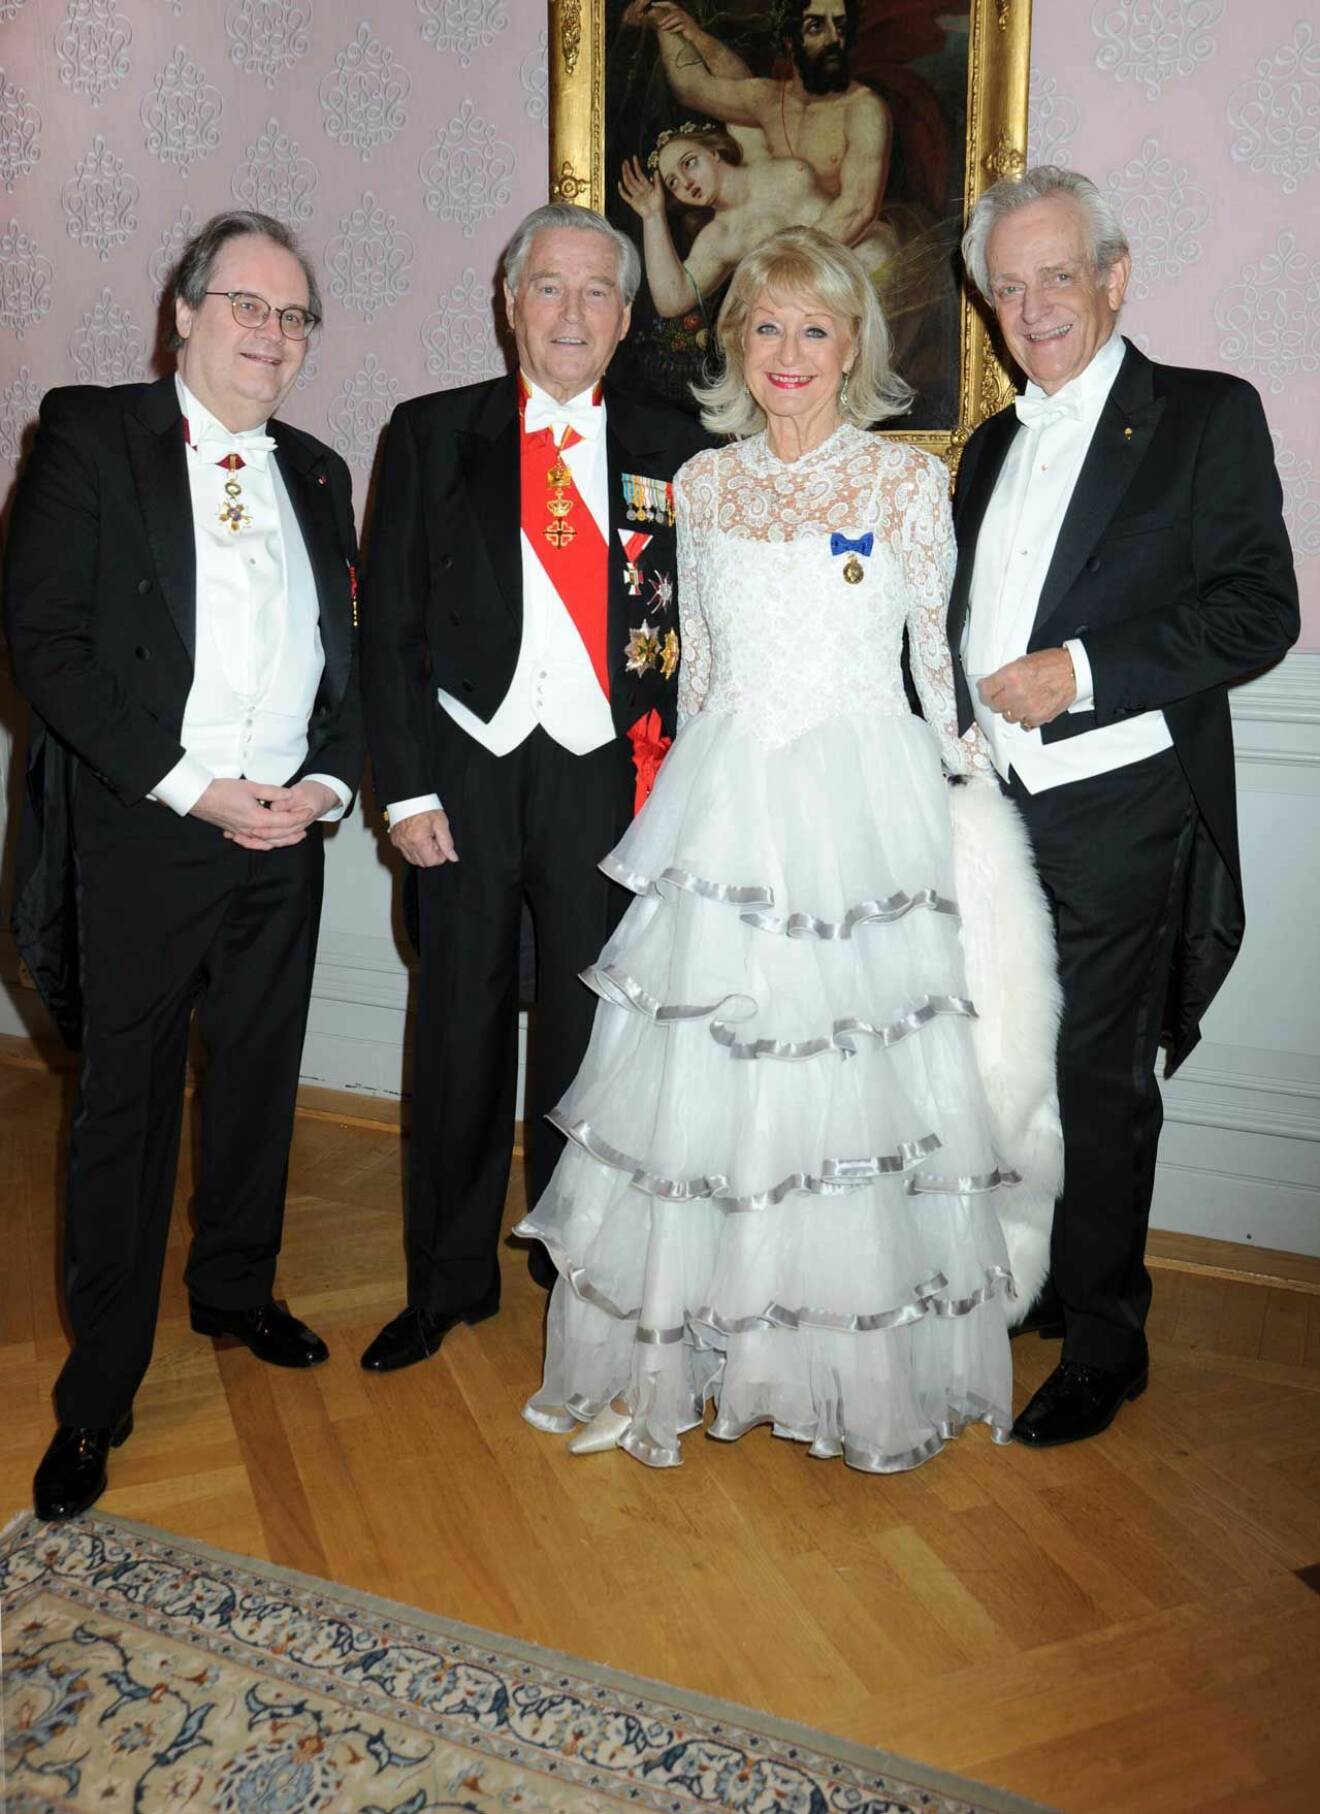 Vilken balkvartett! Belgiens ambassdör Hugo Brauwers, generalkonsul Gunnar Andersson och makarna Alexandra Charles och Bengt von Hofsten.